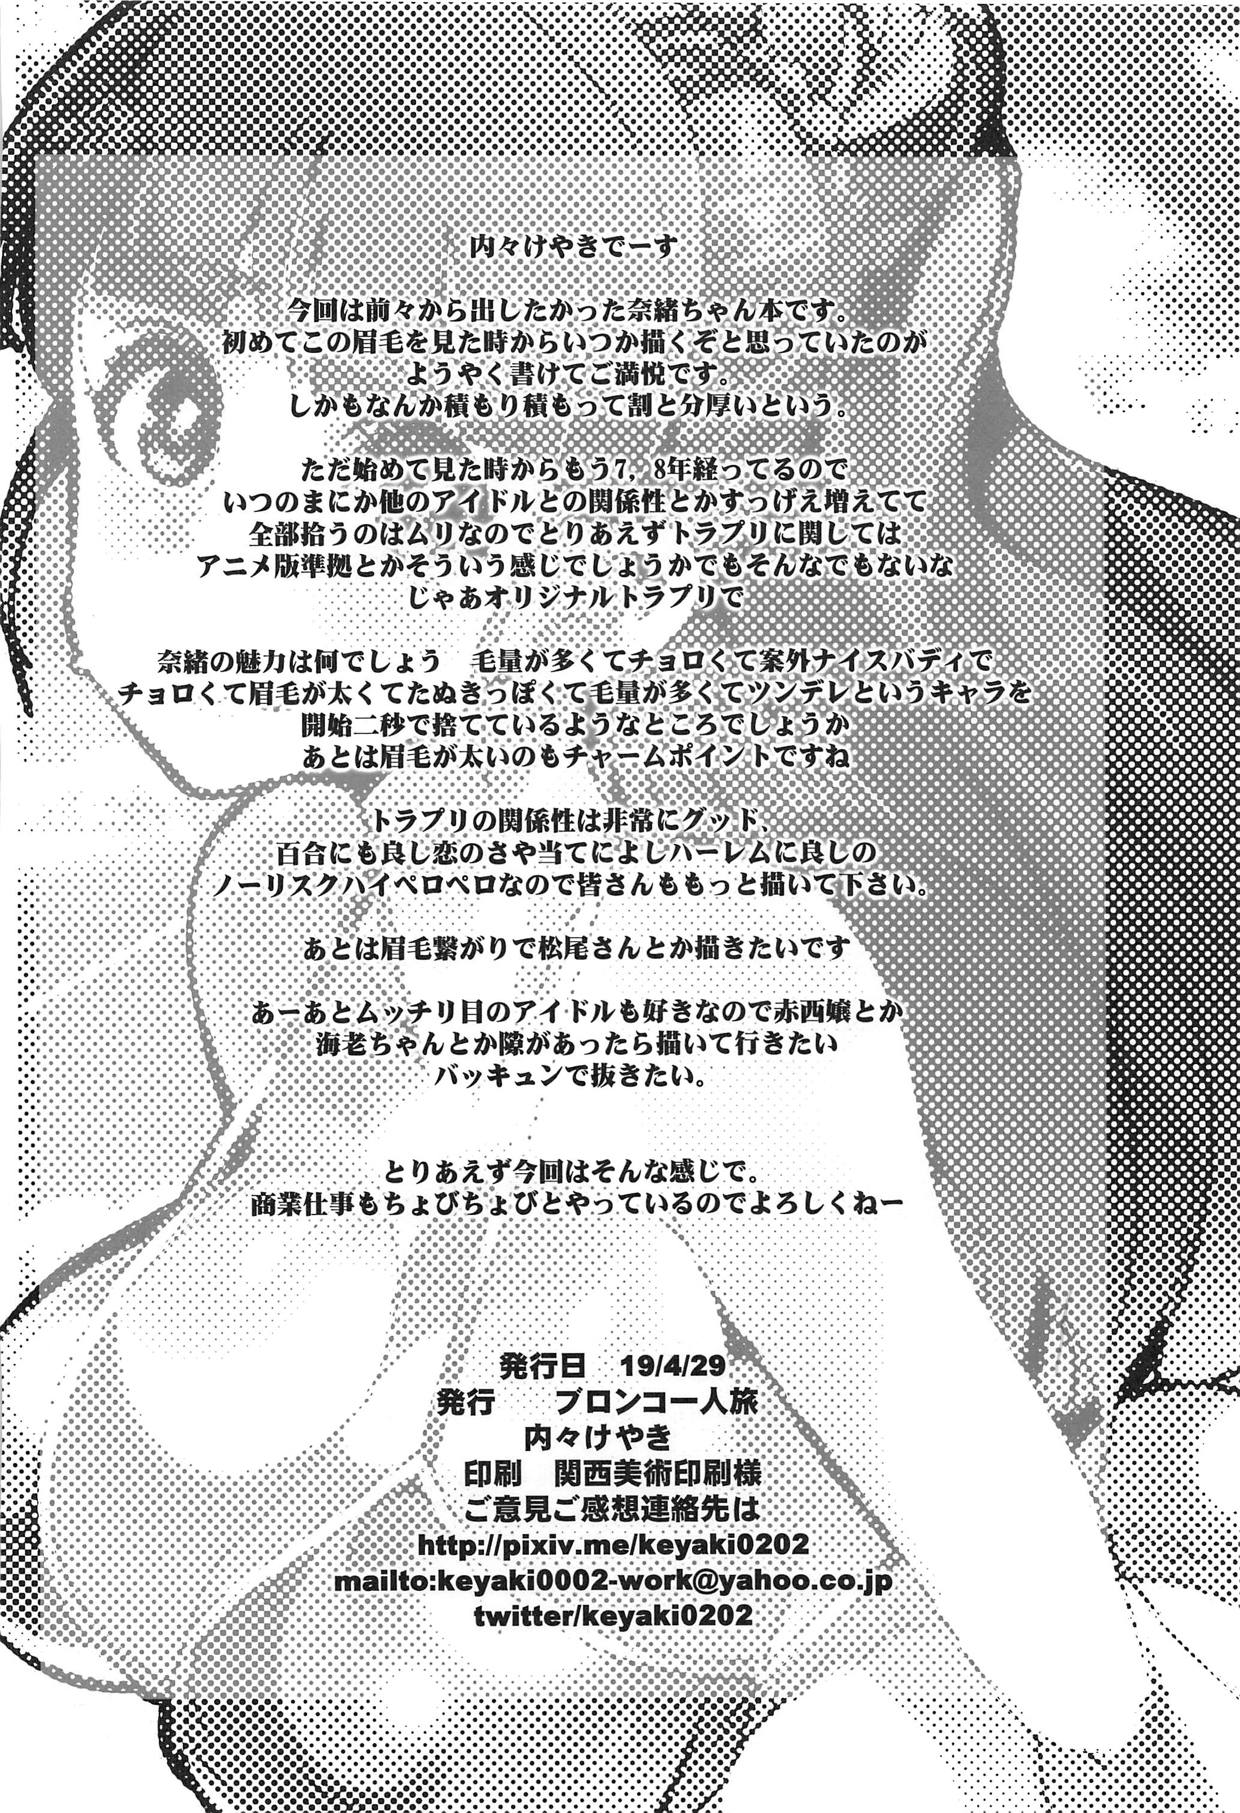 (COMIC1☆15) [ブロンコ一人旅 (内々けやき)] ALL TIME CINDERELLA 神谷奈緒 (アイドルマスター シンデレラガールズ)